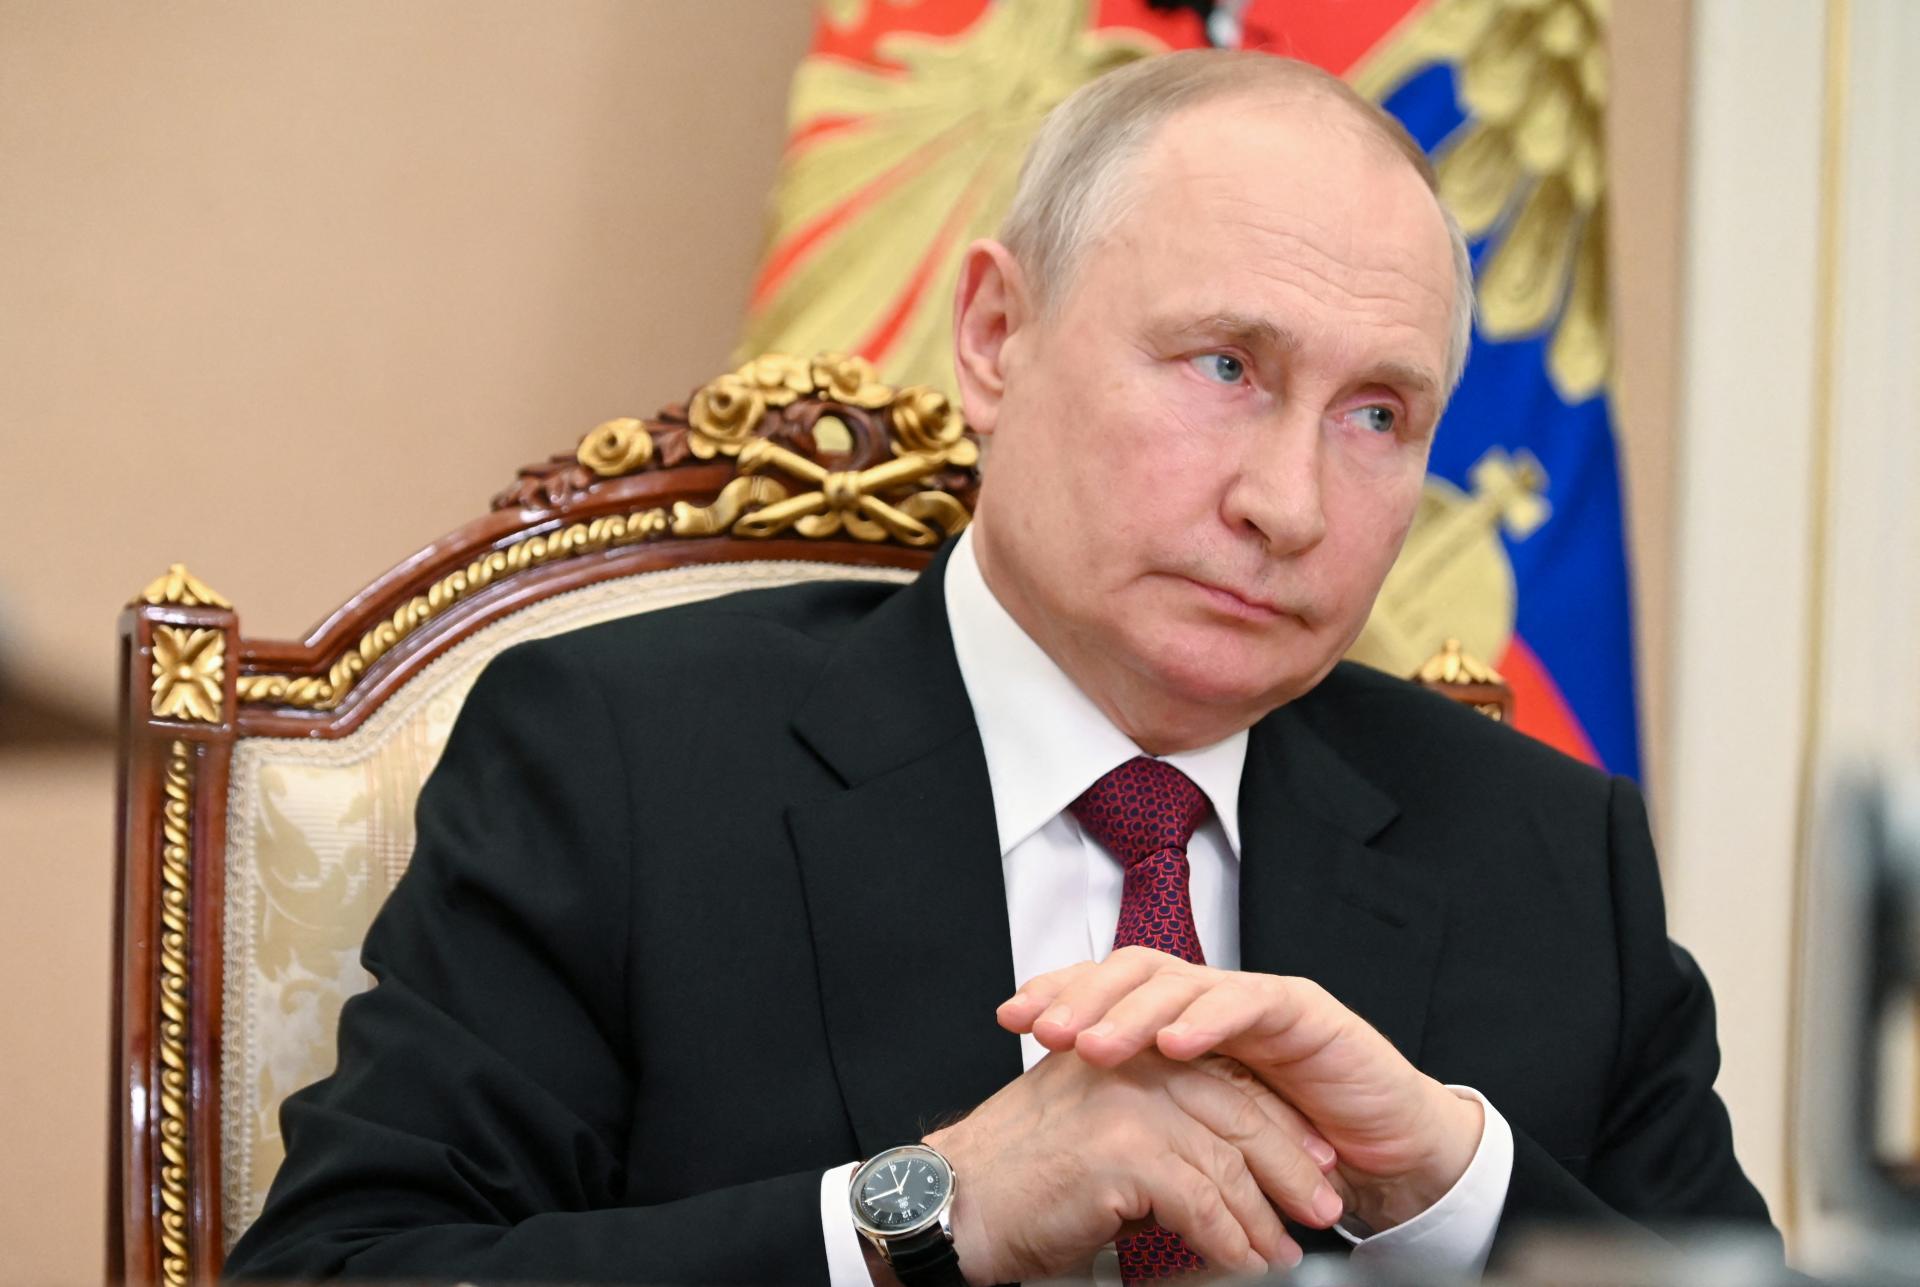 Napadnutie Bieloruska bude útokom na Rusko, varuje Putin. Moskva odpovie všetkými prostriedkami